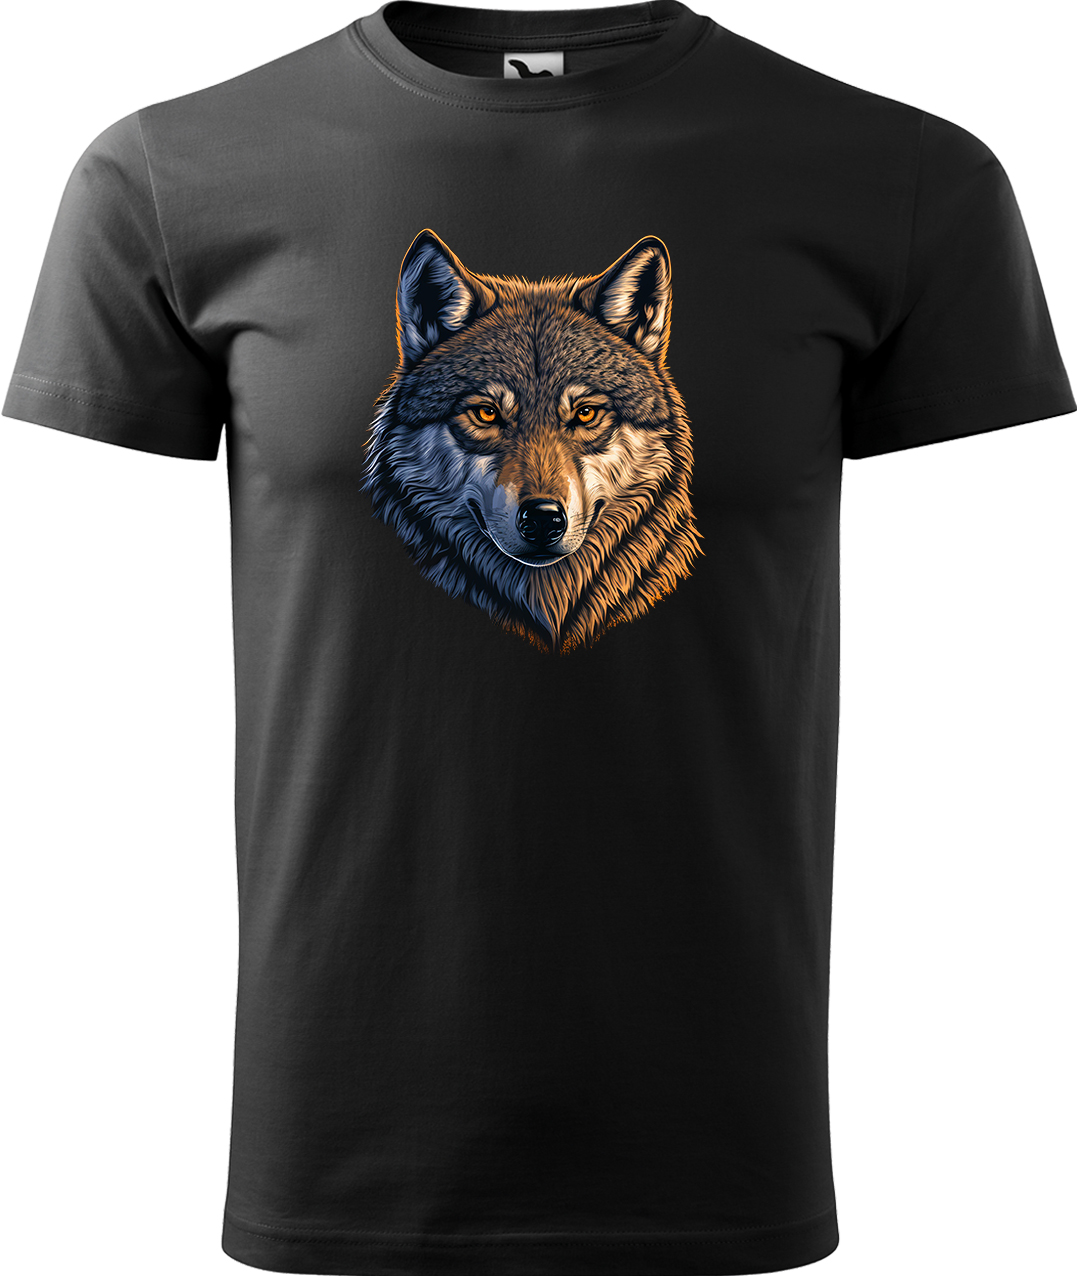 Pánské tričko s vlkem - Hlava vlka Velikost: M, Barva: Černá (01), Střih: pánský